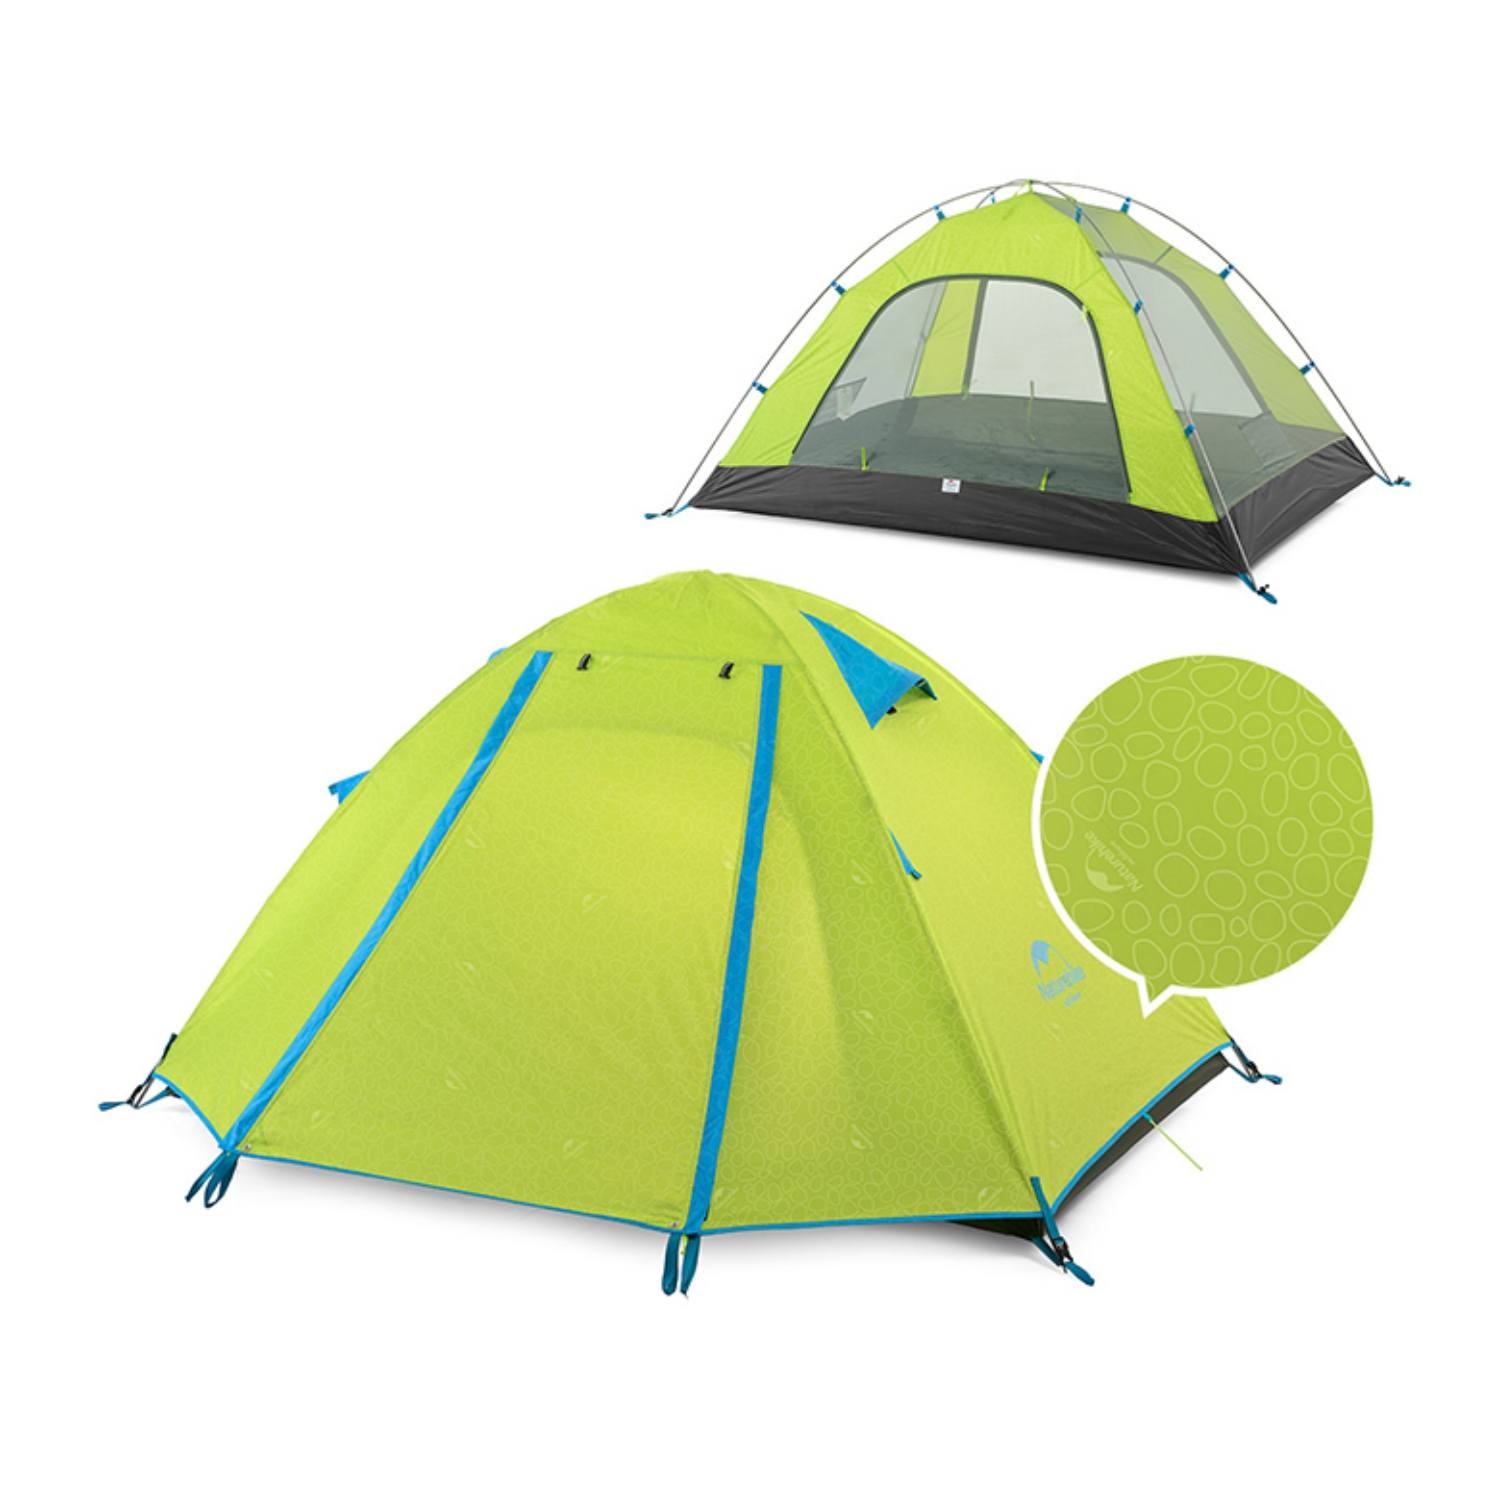 Naturehike Pキャンプ2人用テントドームテント 2~4人用 UPF50+ 耐水圧2000mm+ 二重層 設営簡単 コンパクト